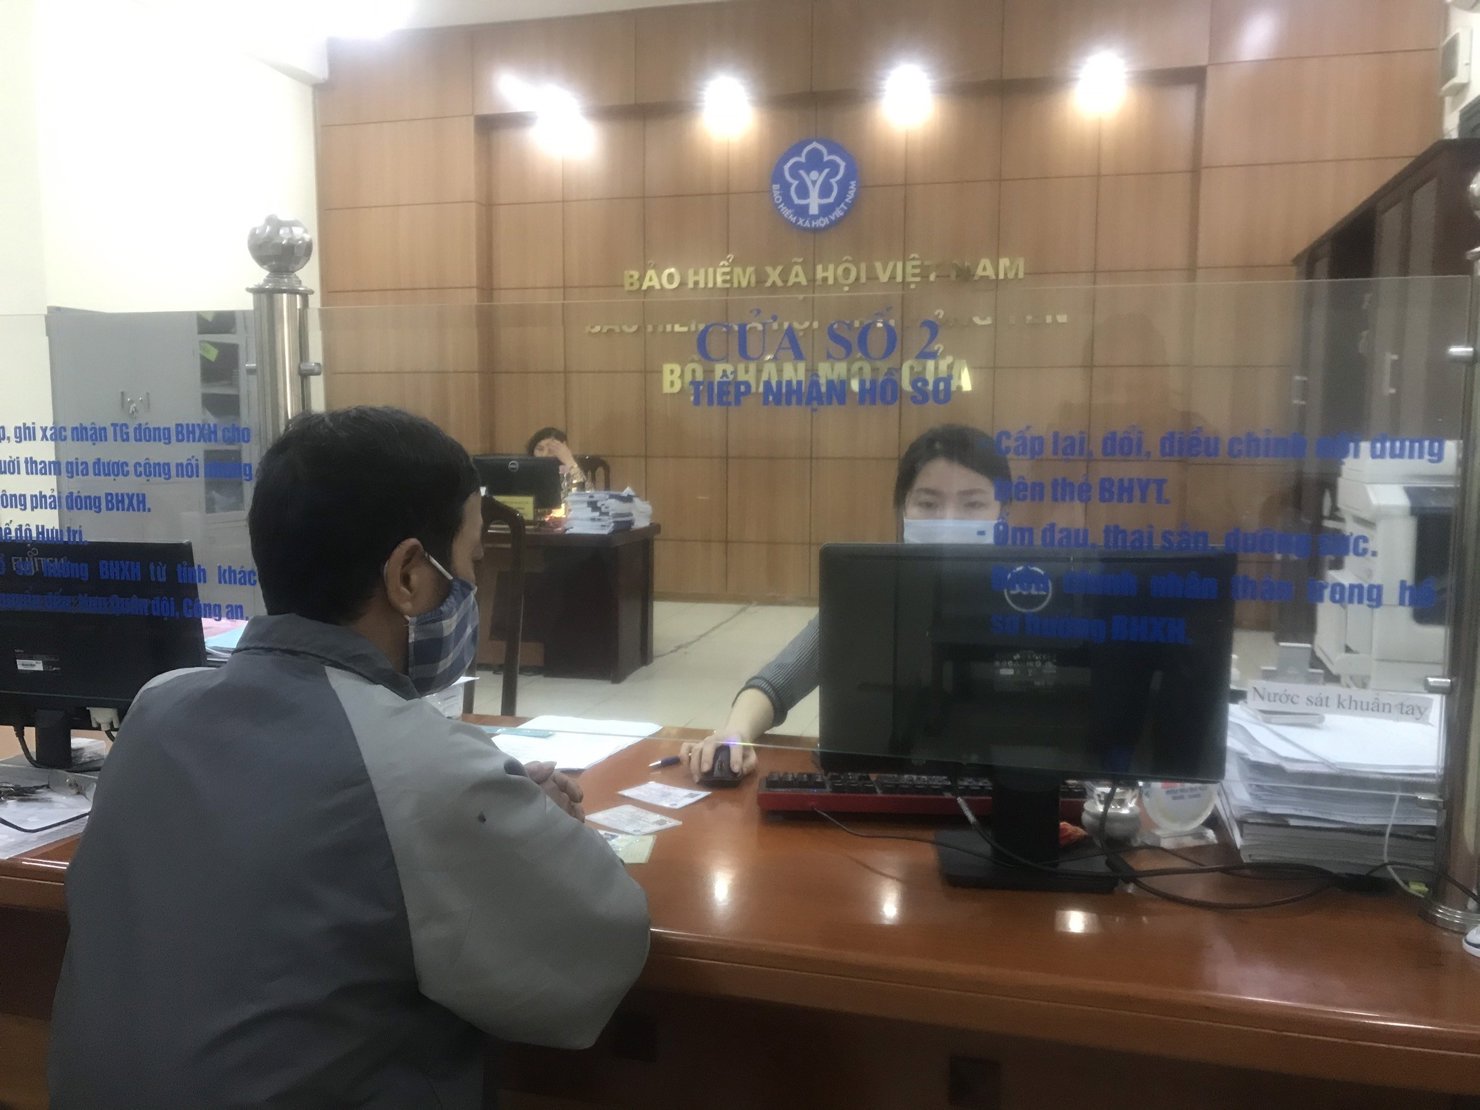 Tiếp nhận hồ sơ tại bộ phận “Một cửa”, BHXH tỉnh Hưng Yên ngày 24/02/2021.